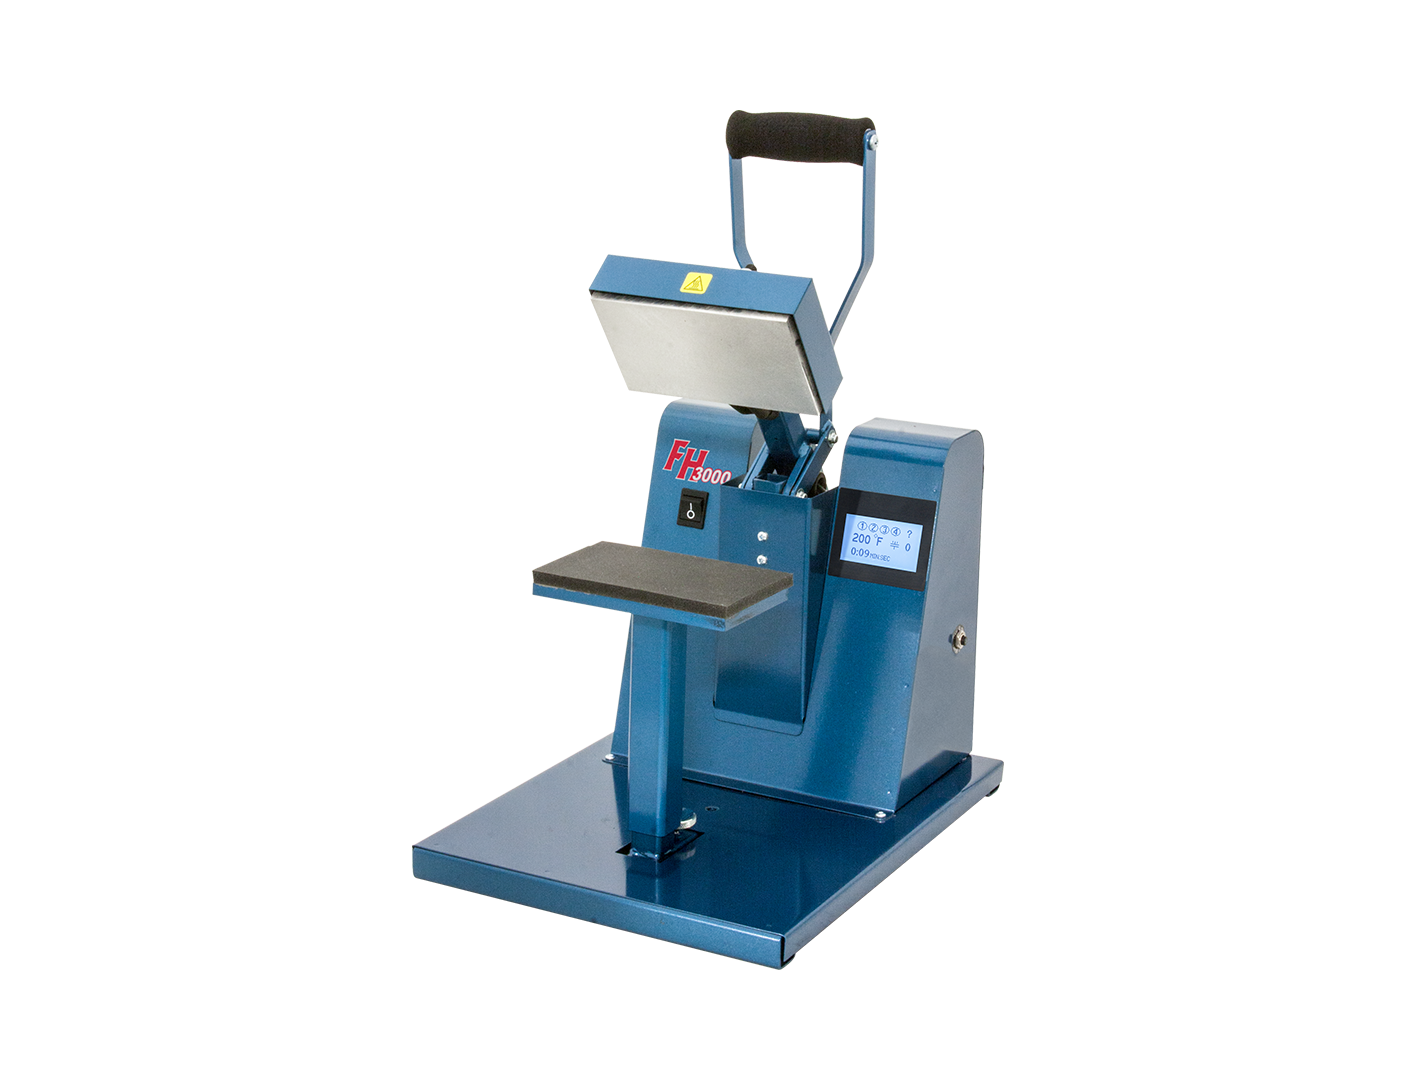 HT-600 20 Clamshell Press, HIX HT-600 Heat Press